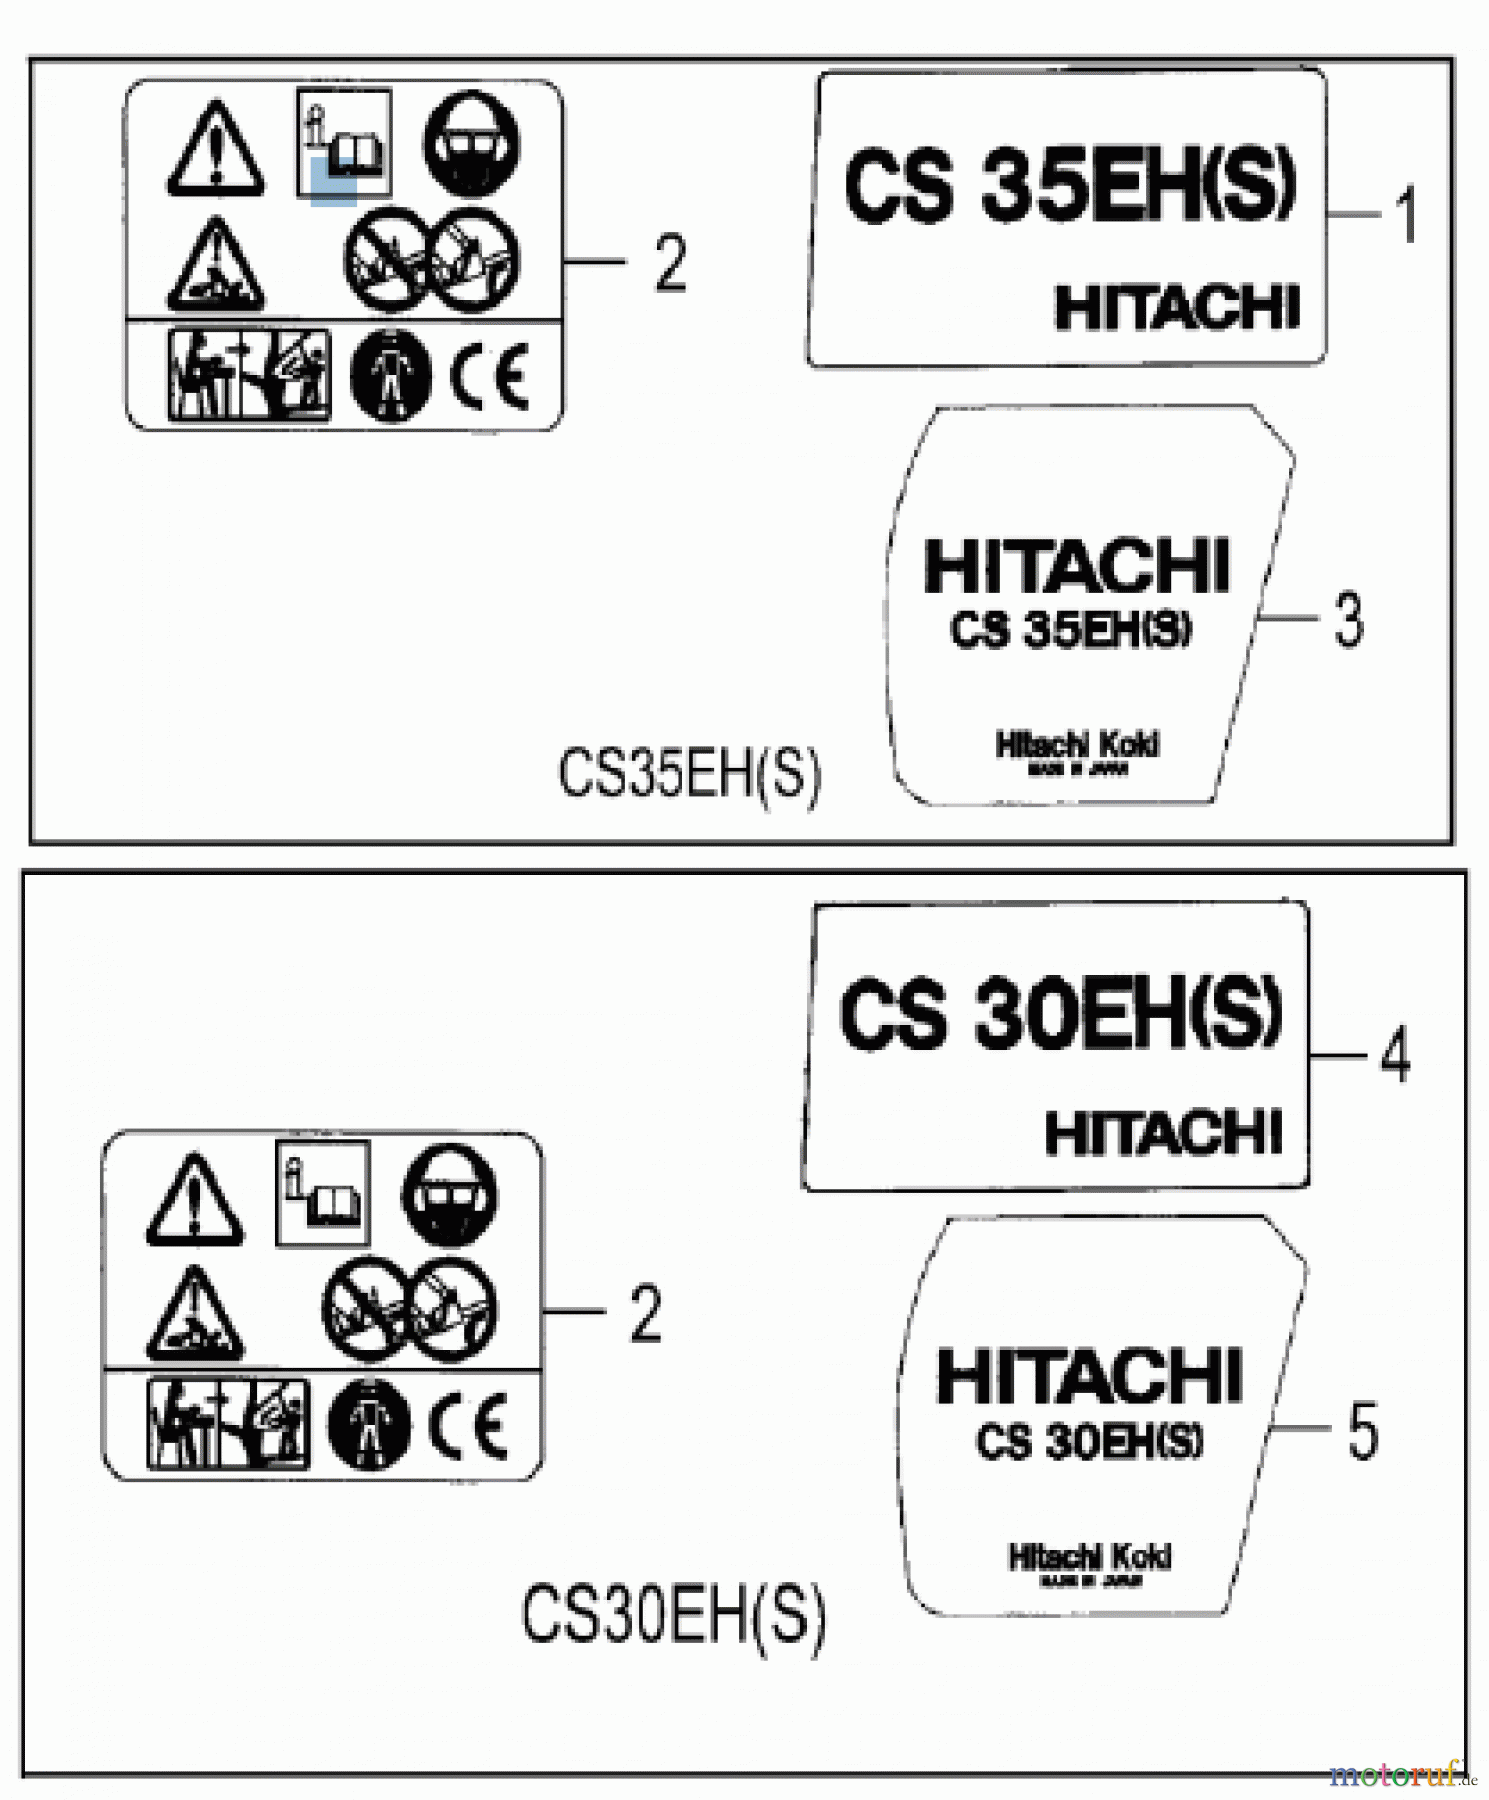  Hitachi Motorsägen ET-Liste CS30EH(S)/35EH(S) Seite 12